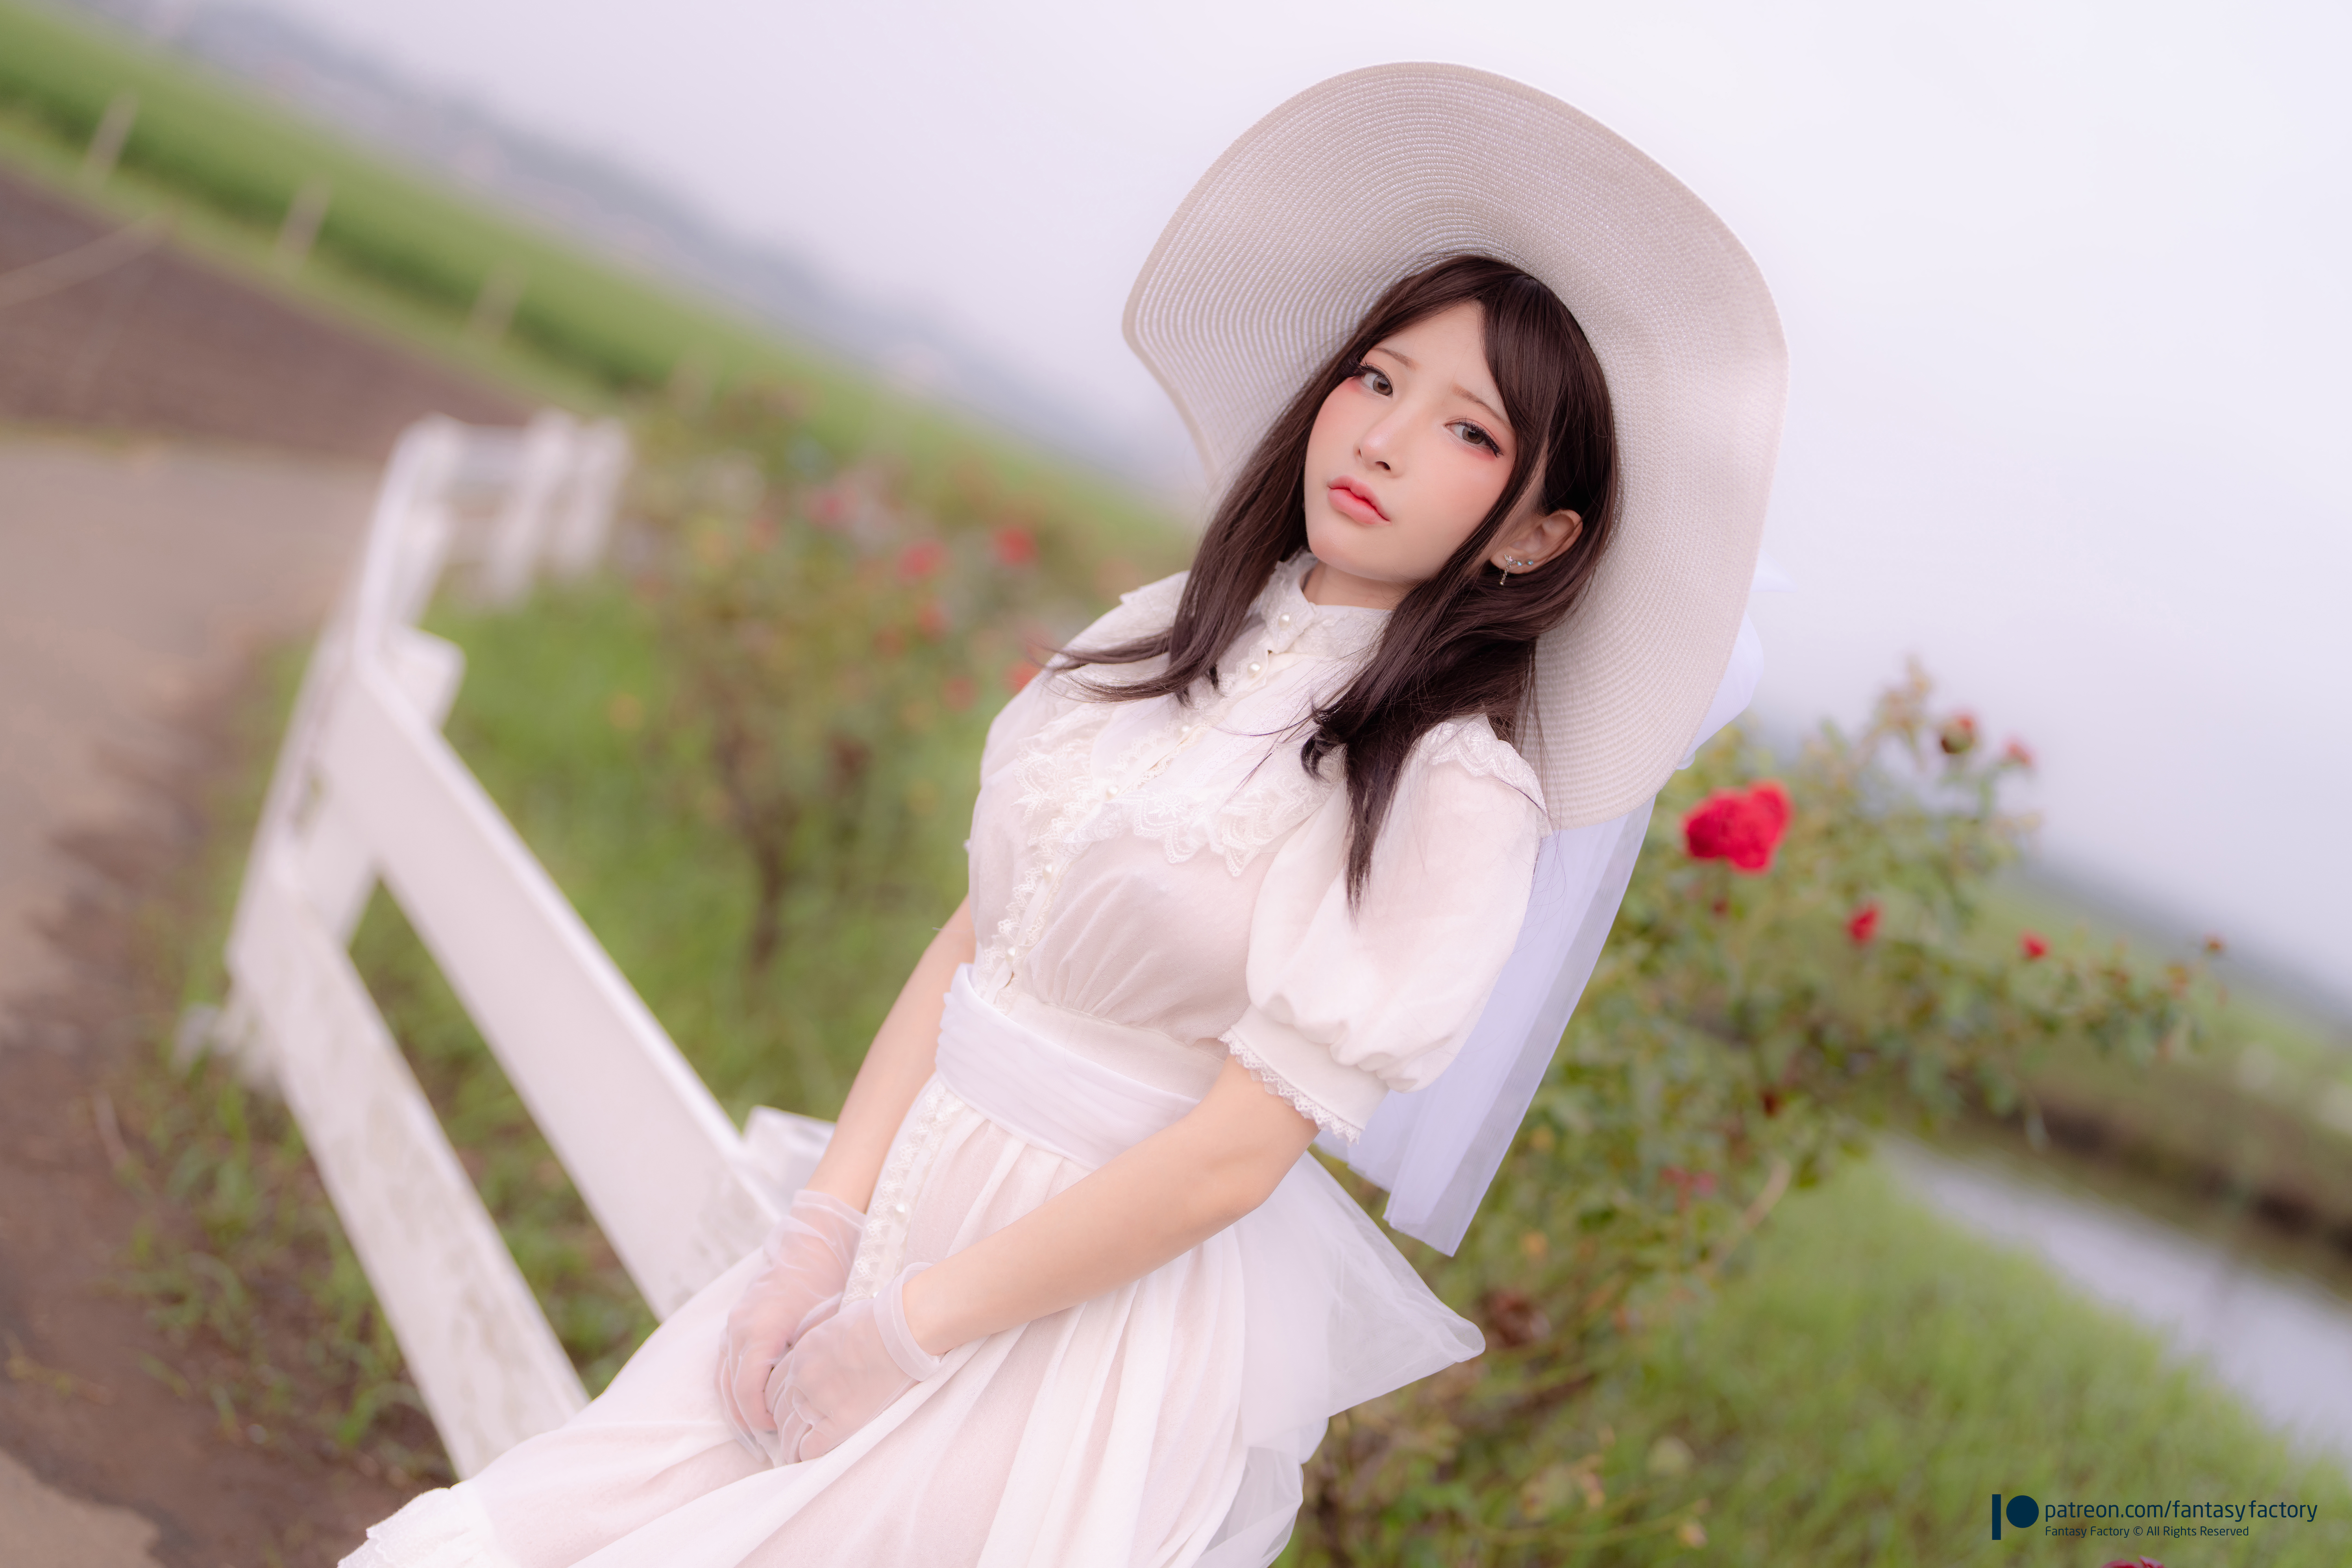 Women Model Asian Women Outdoors Women With Hats Dress White Clothing 8640x5760